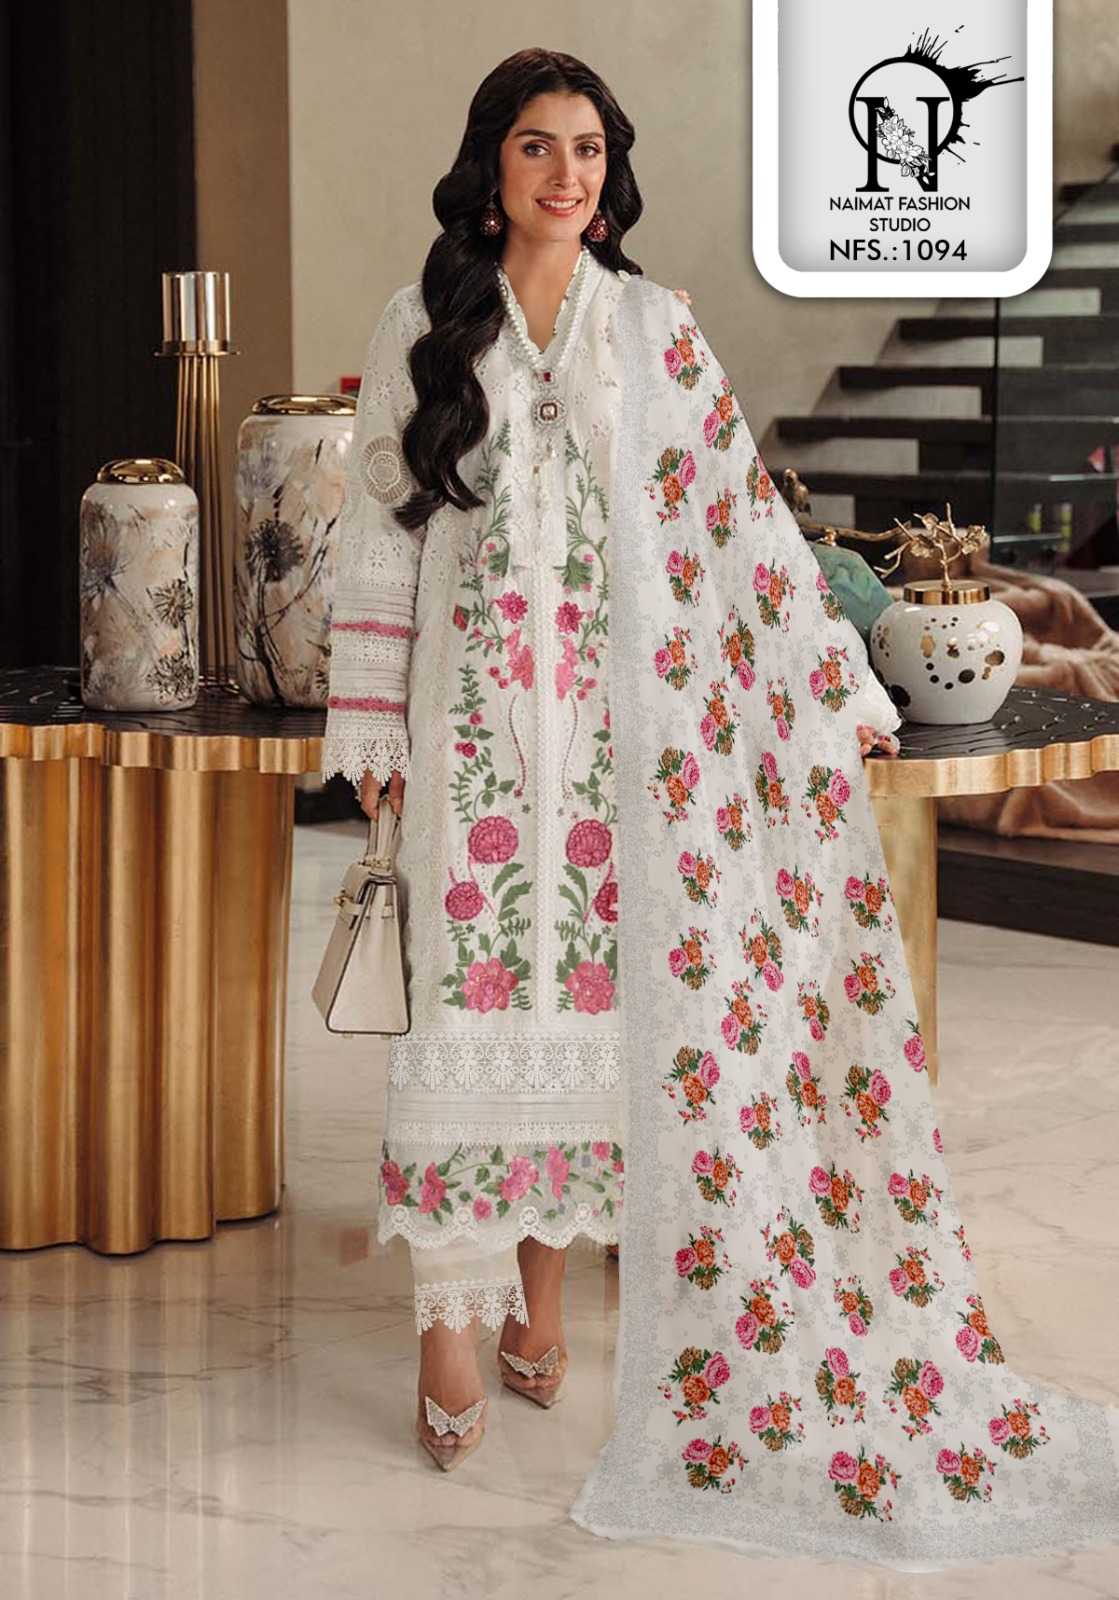 naimat 1094 pakistani designer readymade beautiful salwar kameez